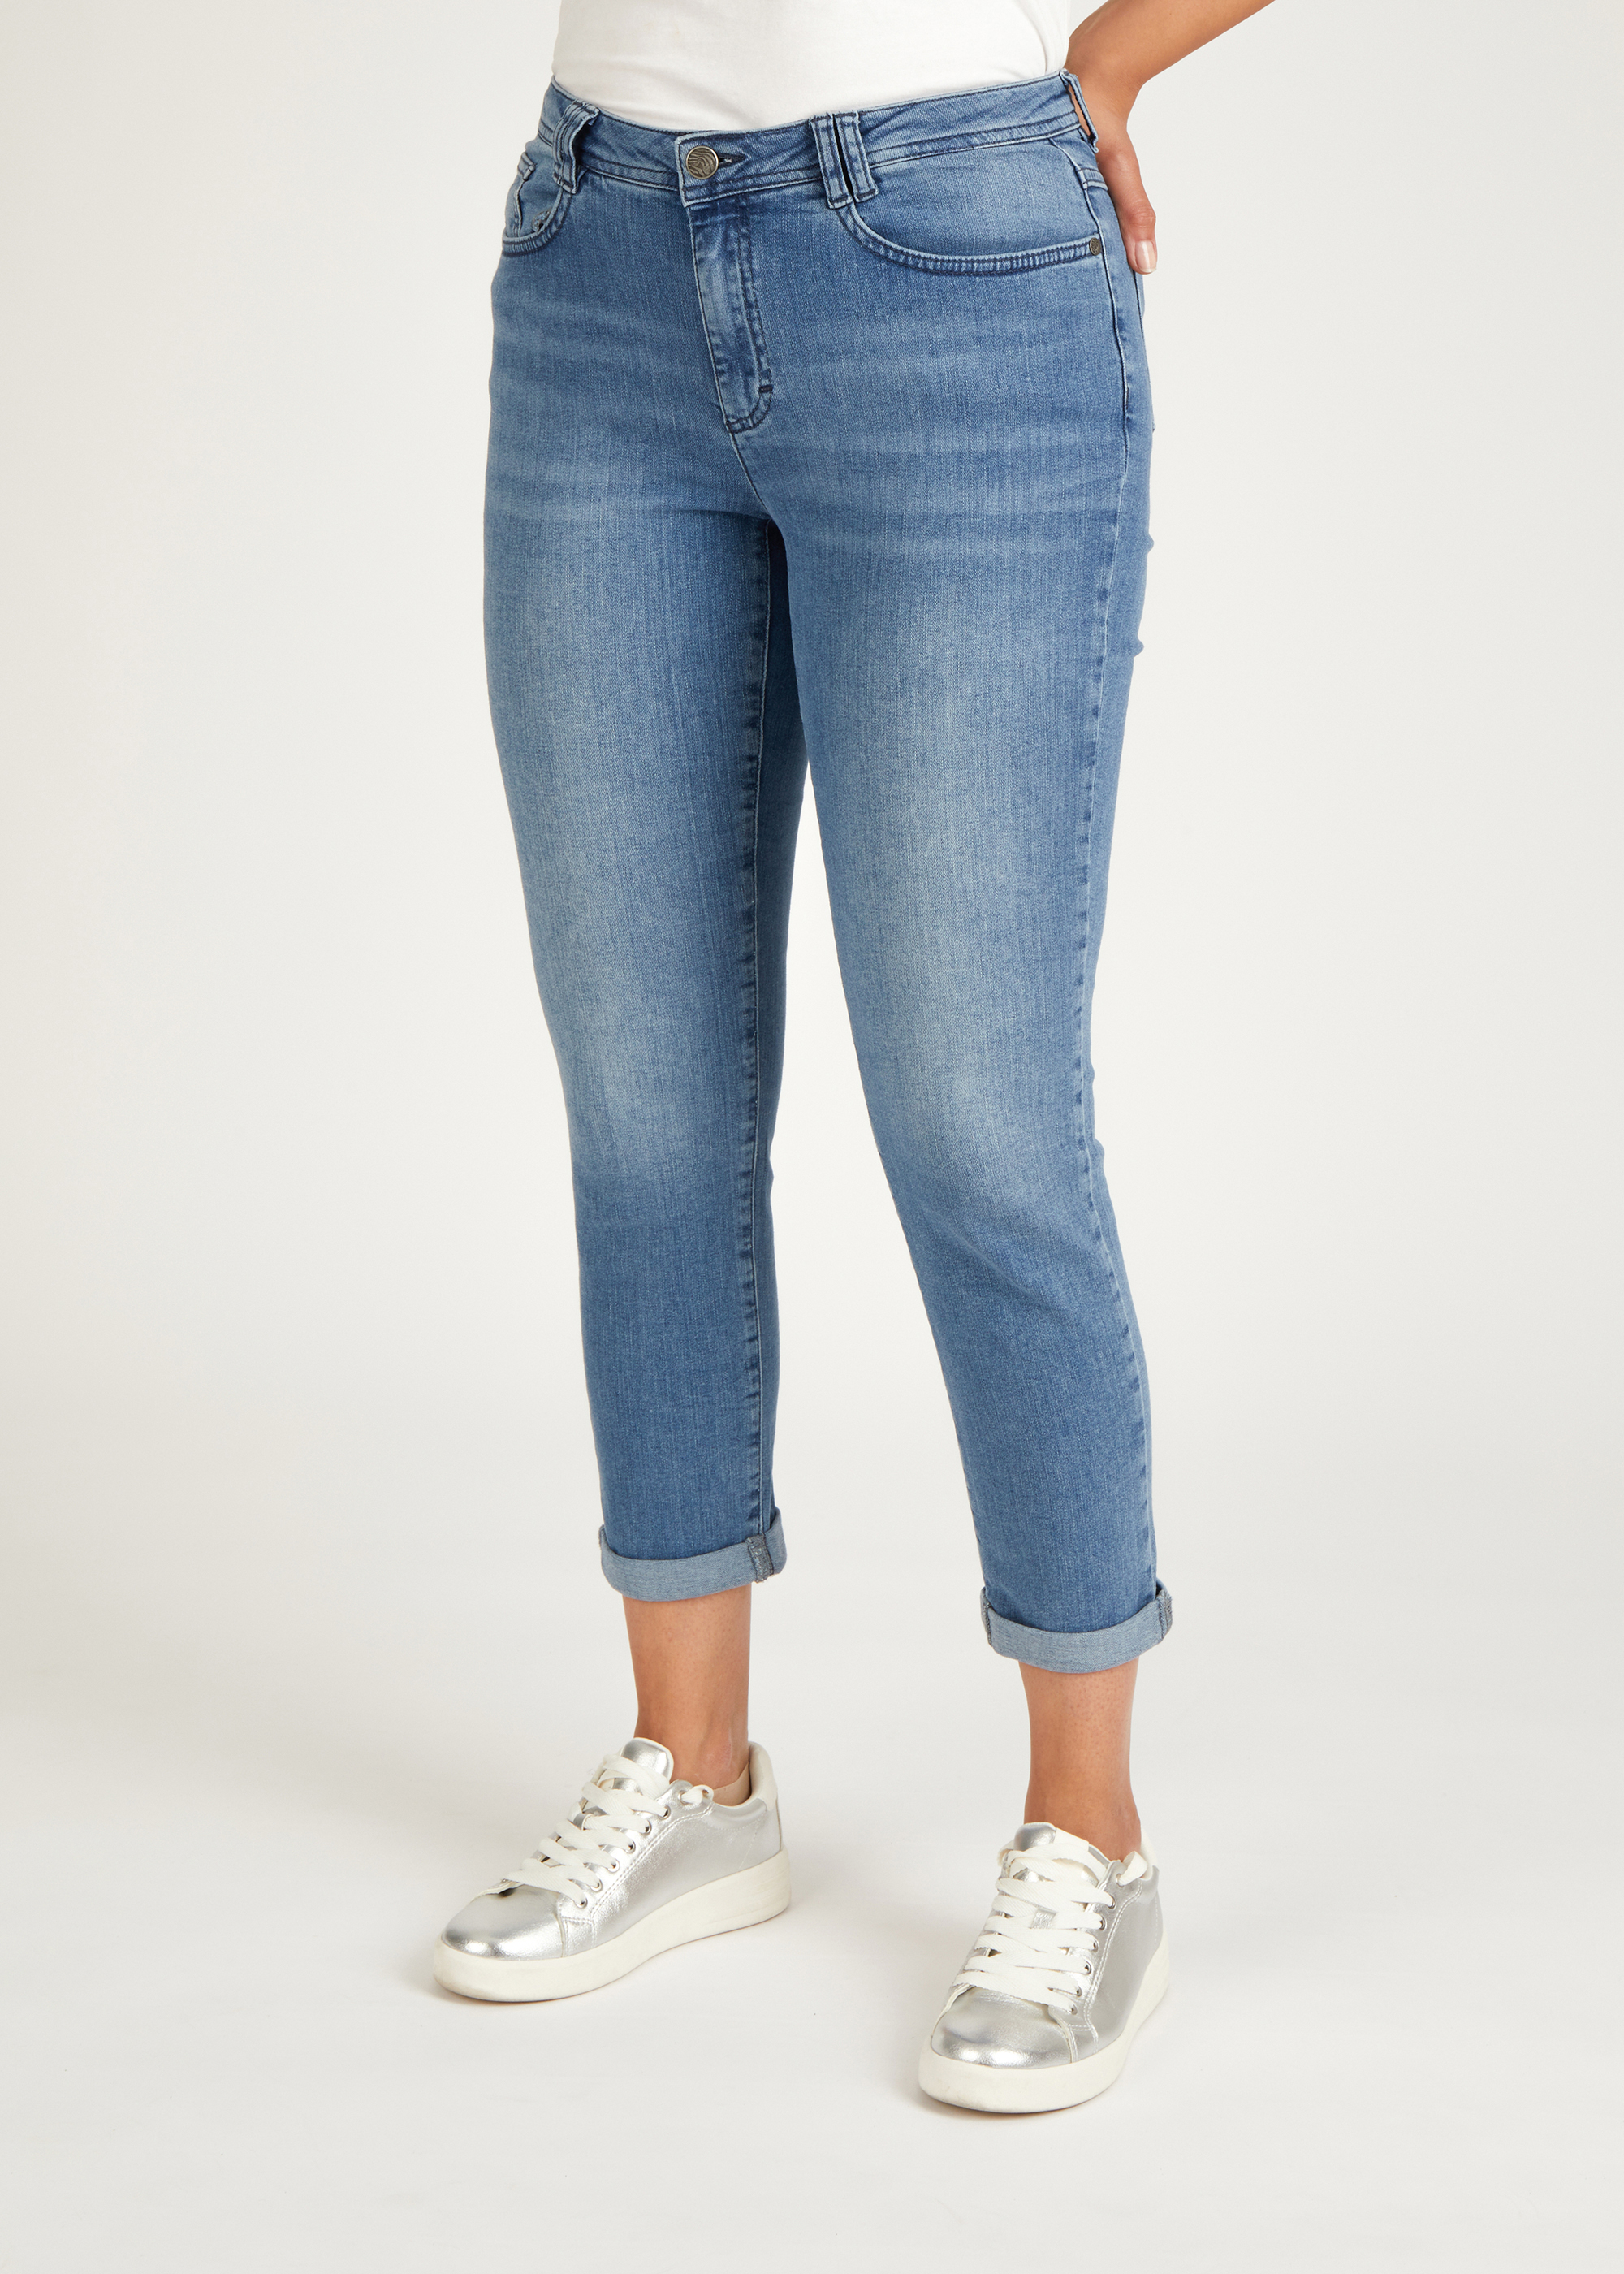 Jeans in Cotton-Qualität mit Used-Effekt